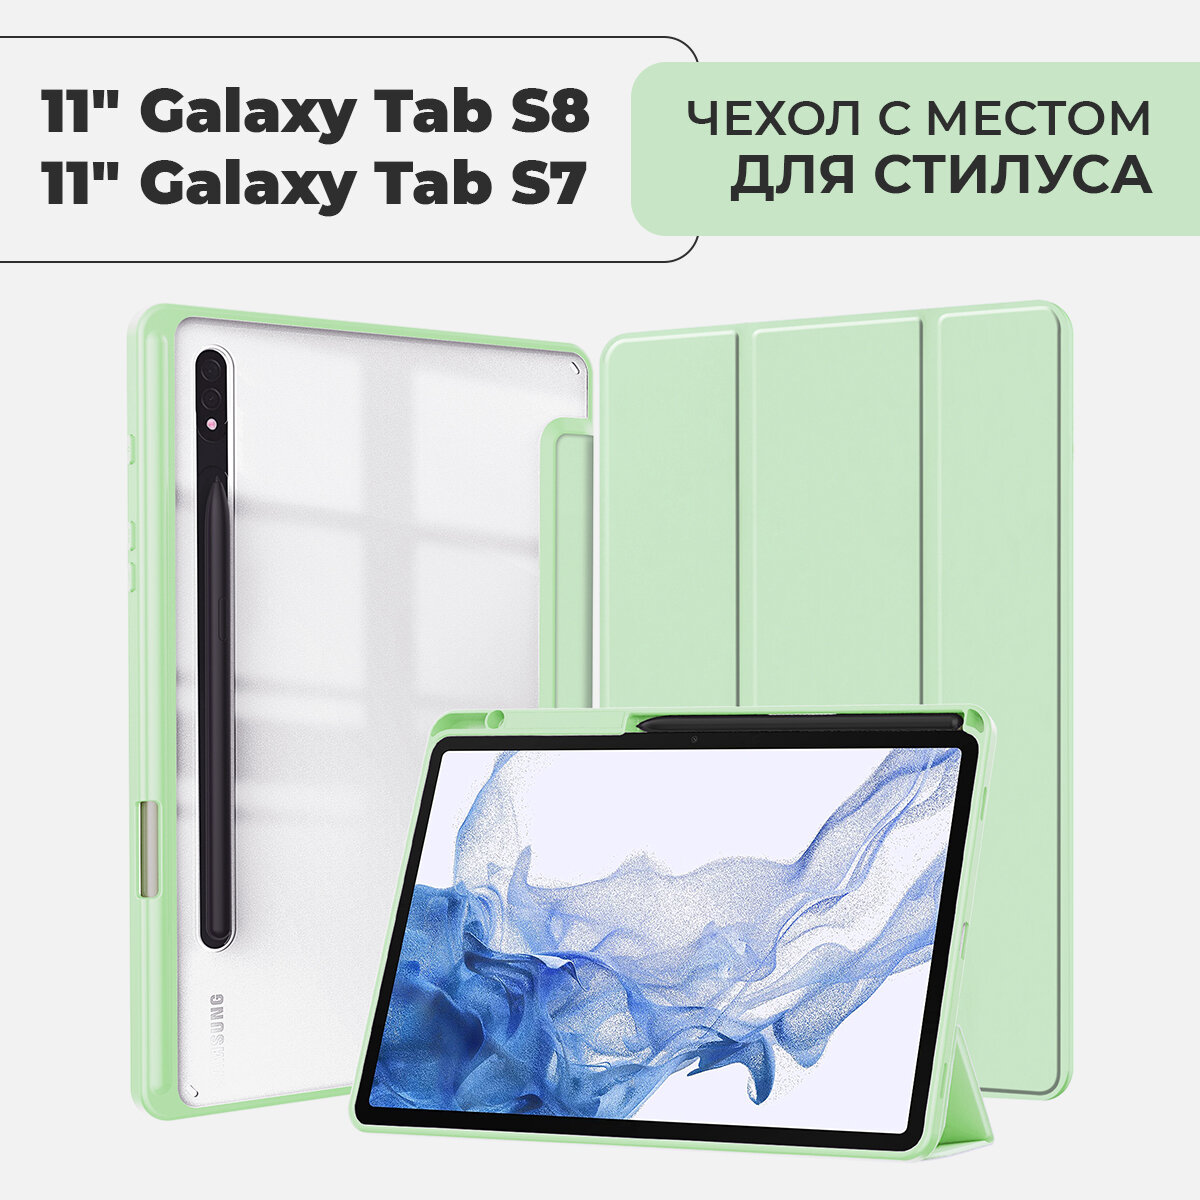 Чехол для планшета Samsung Galaxy Tab S8 / S7 экран 11.0" с местом для стилуса, фисташковый